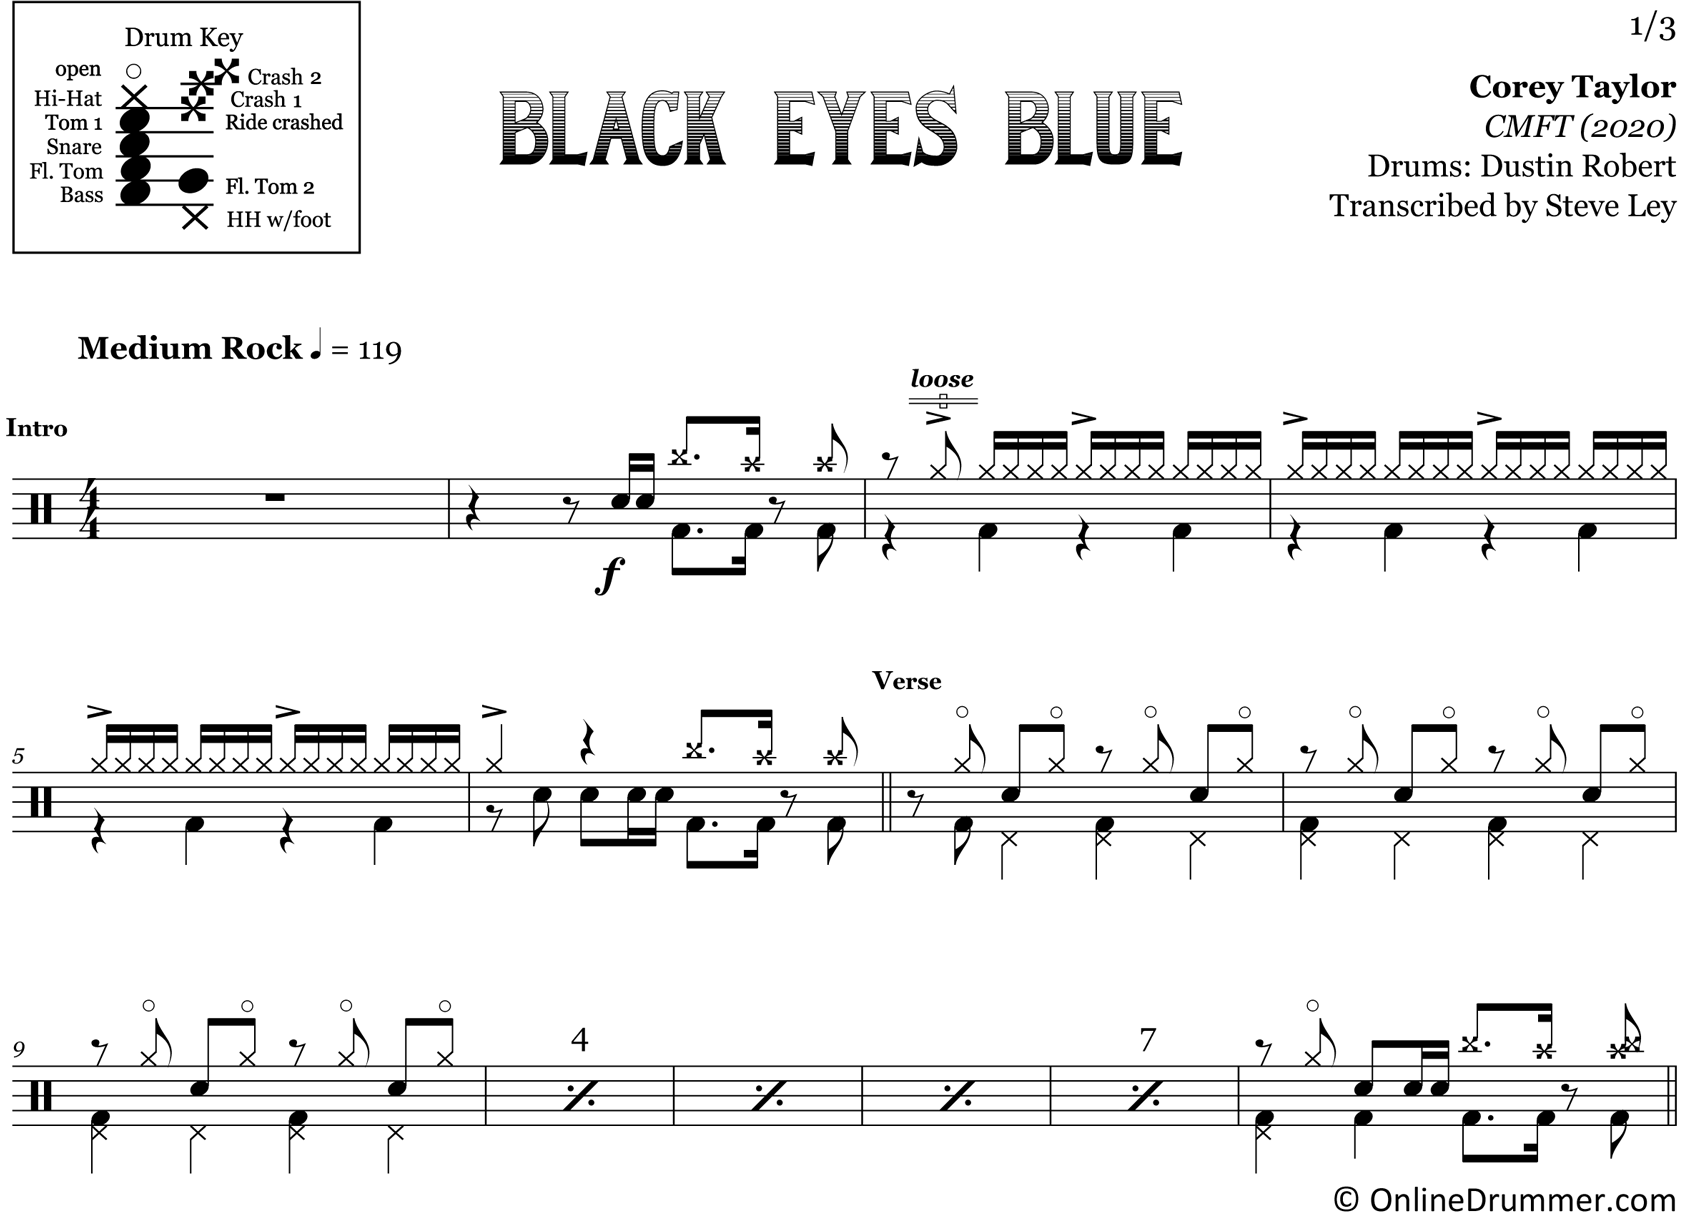 Black Eyes Blue - Corey Taylor - Drum Sheet Music